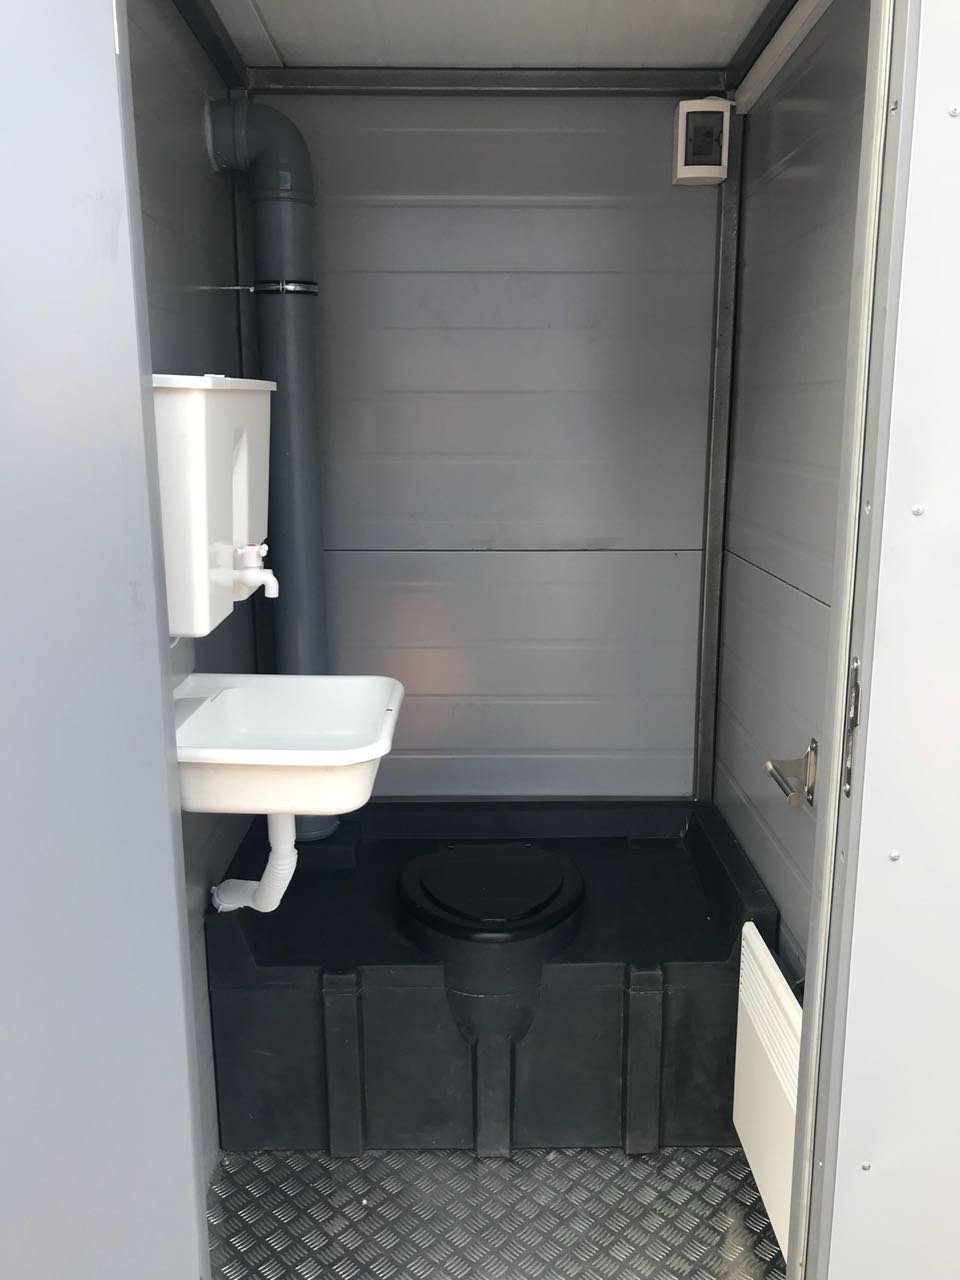 Теплая туалетная кабина ЭКОС-1 (фото 2) в Санкт-Петербурге